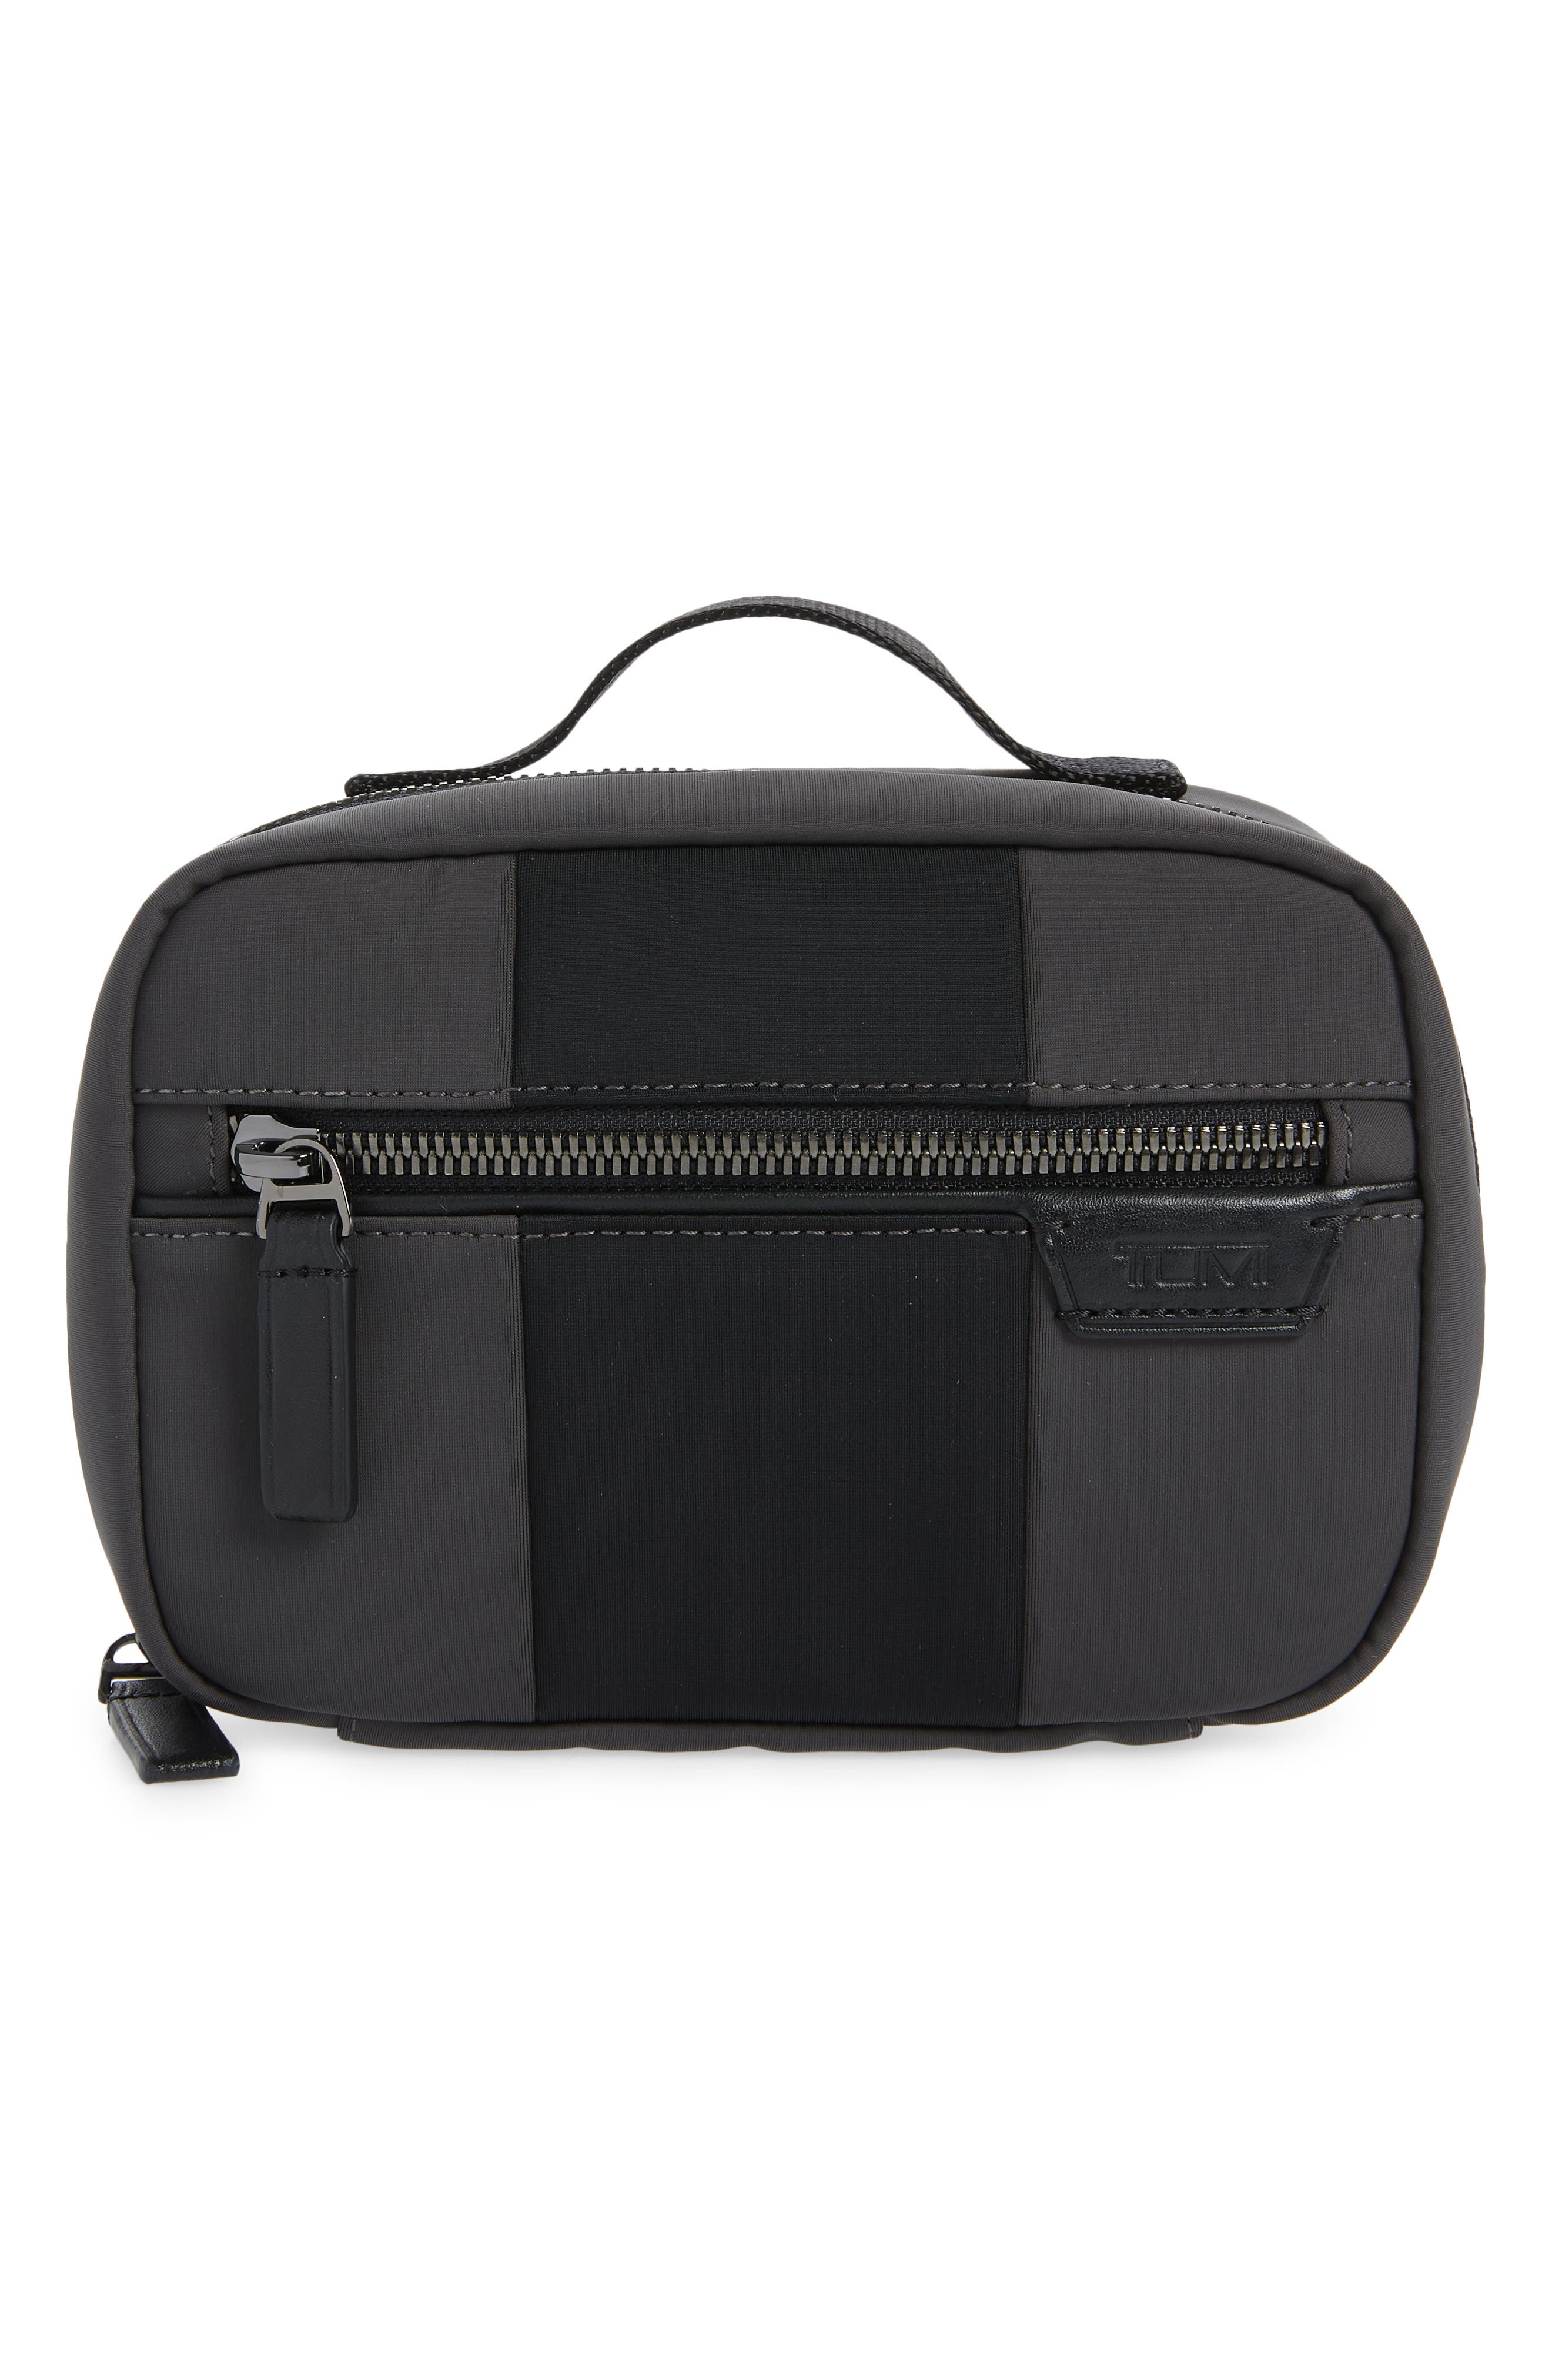 Tumi Braxmar Travel Kit In Grey/ Black Stripe ModeSens